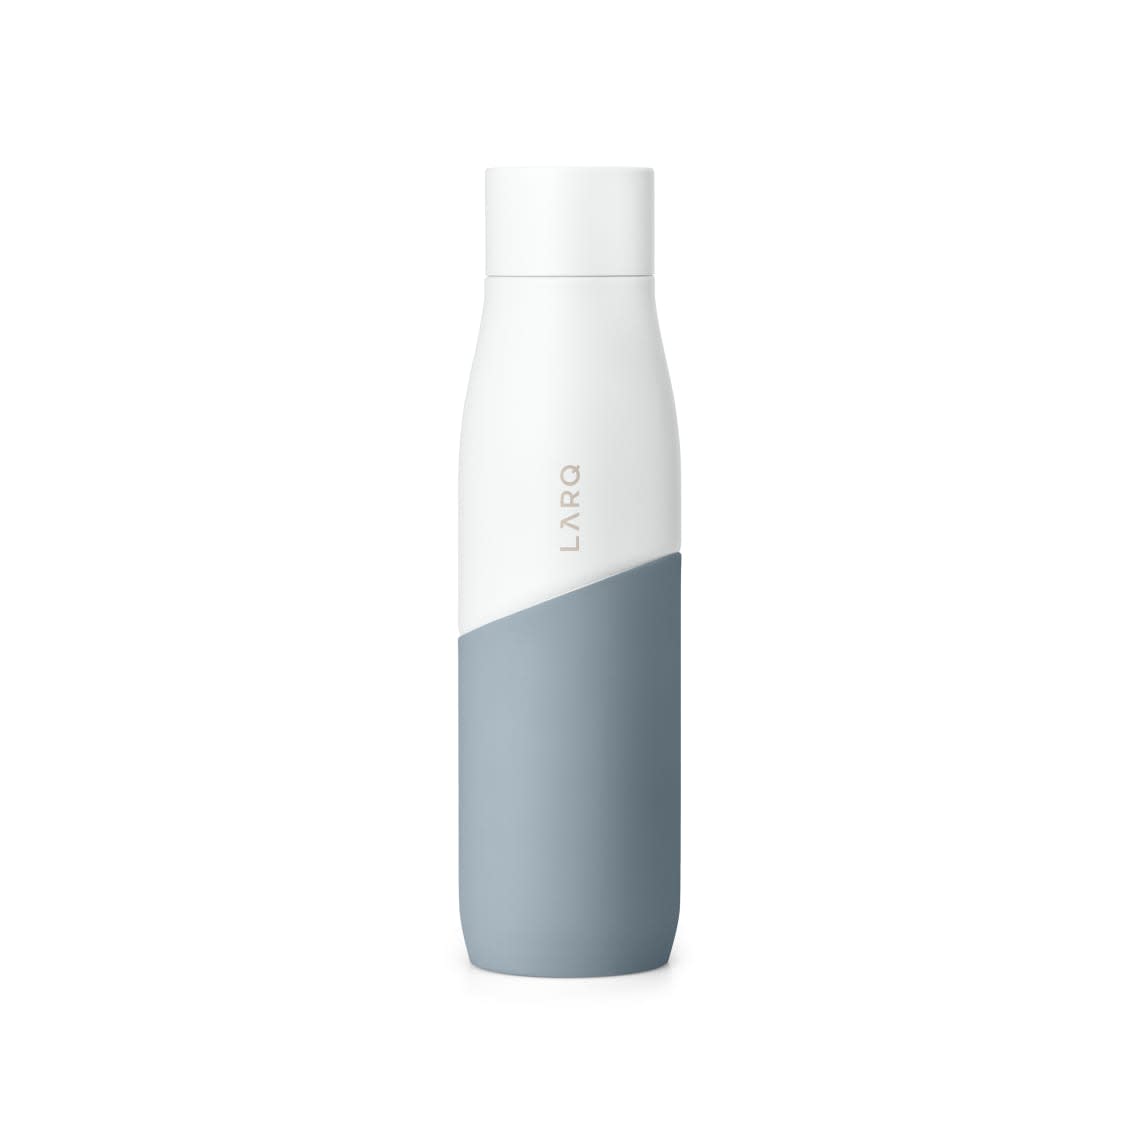 LARQ Bottle Movement PureVis™ in White Pebble Color 2